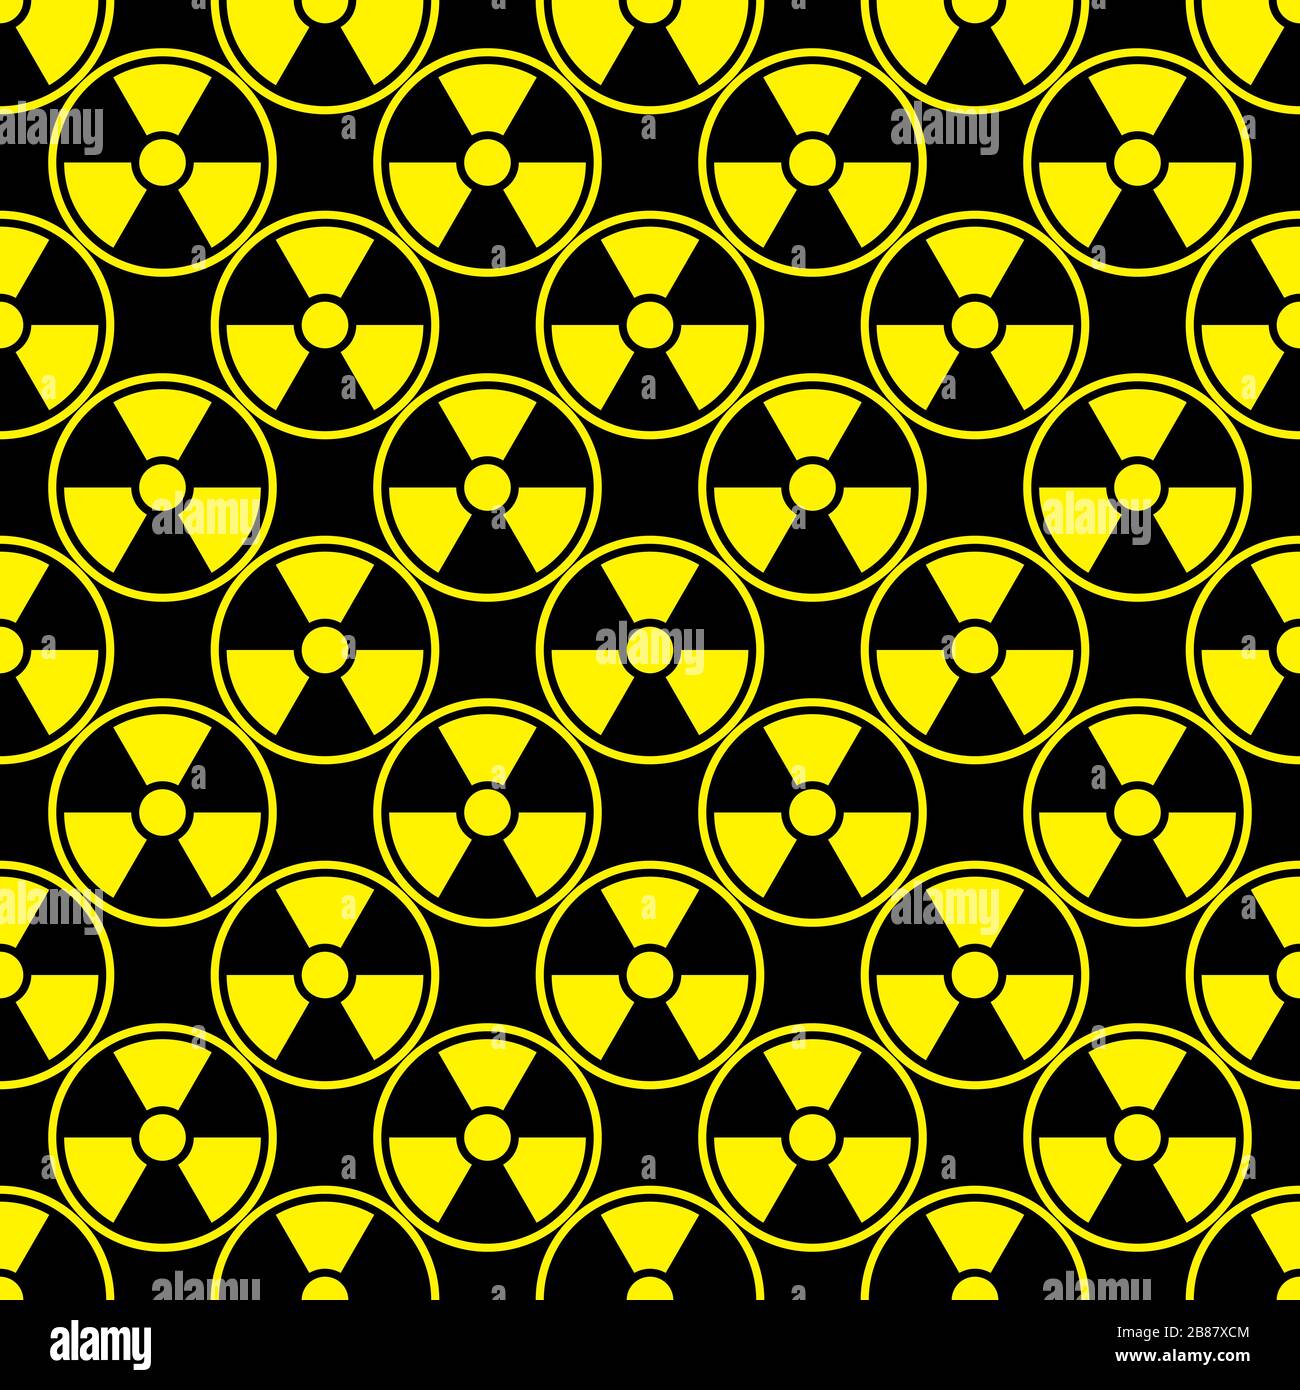 Radioaktivitäts-Emblem Gefahrensymbol Hintergrund schwarz gelb Stock Vektor